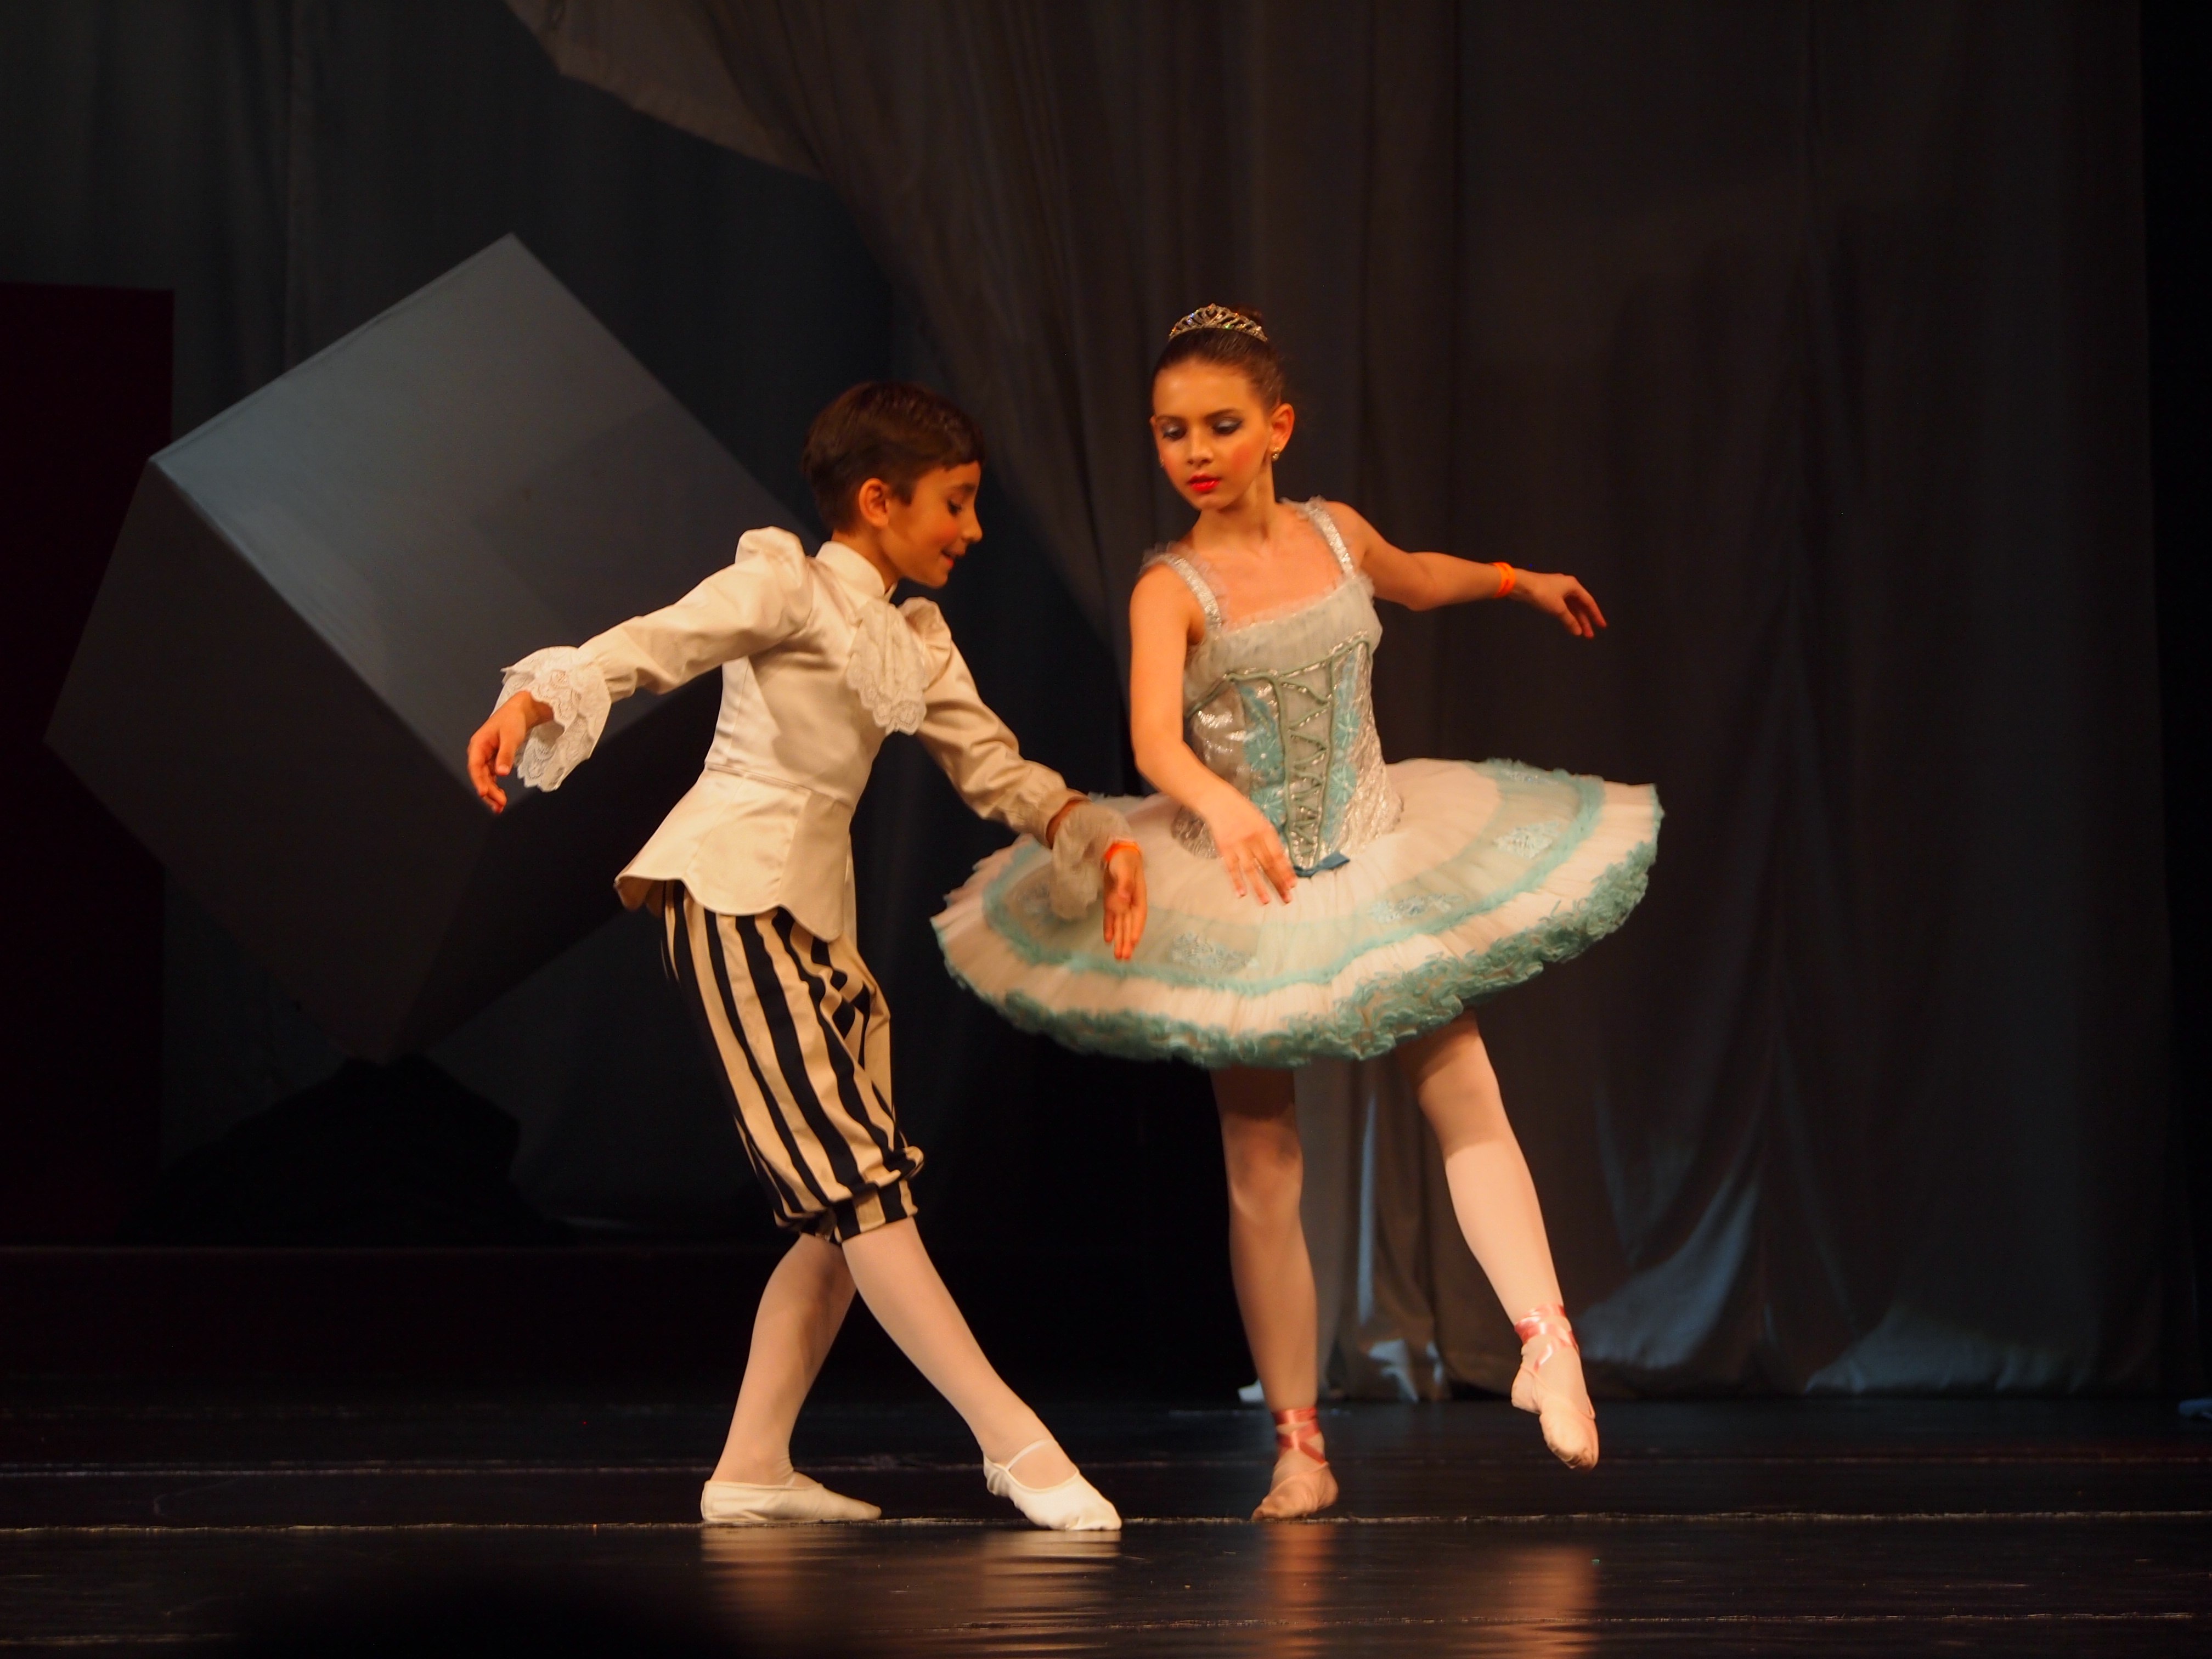 Cursuri De Balet In Bucuresti Pentru Copii 4 18 Ani